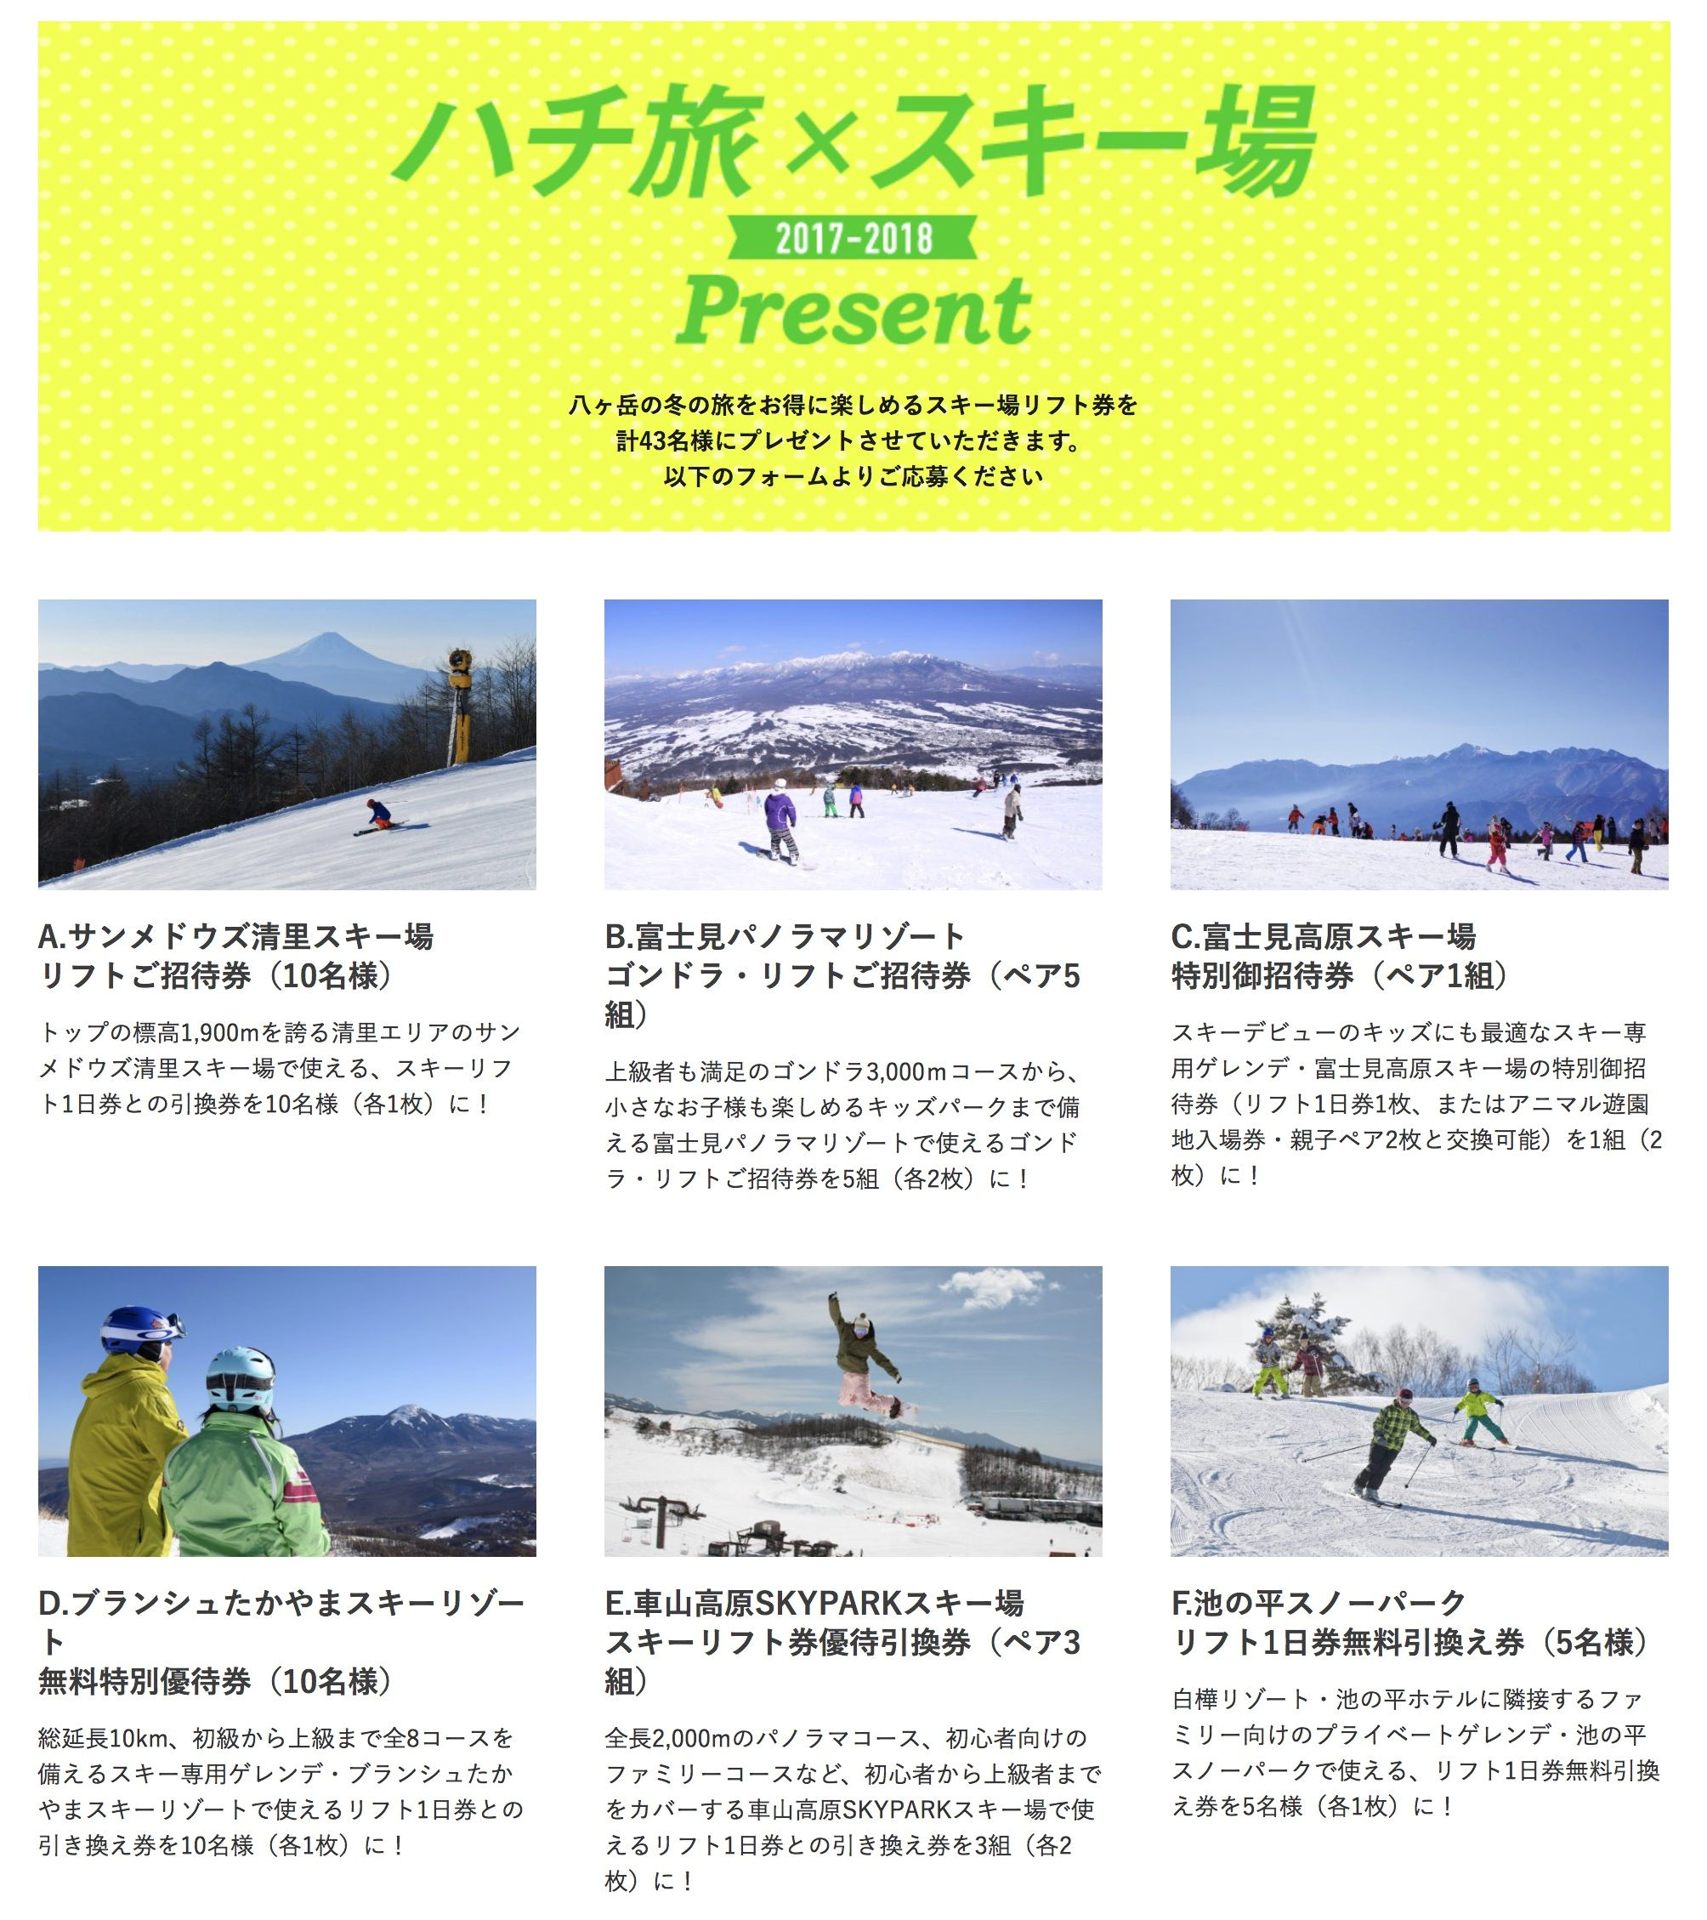 富士見パノラマリゾート ゴンドラ・リフト券 ２枚枚数2枚 - スキー場